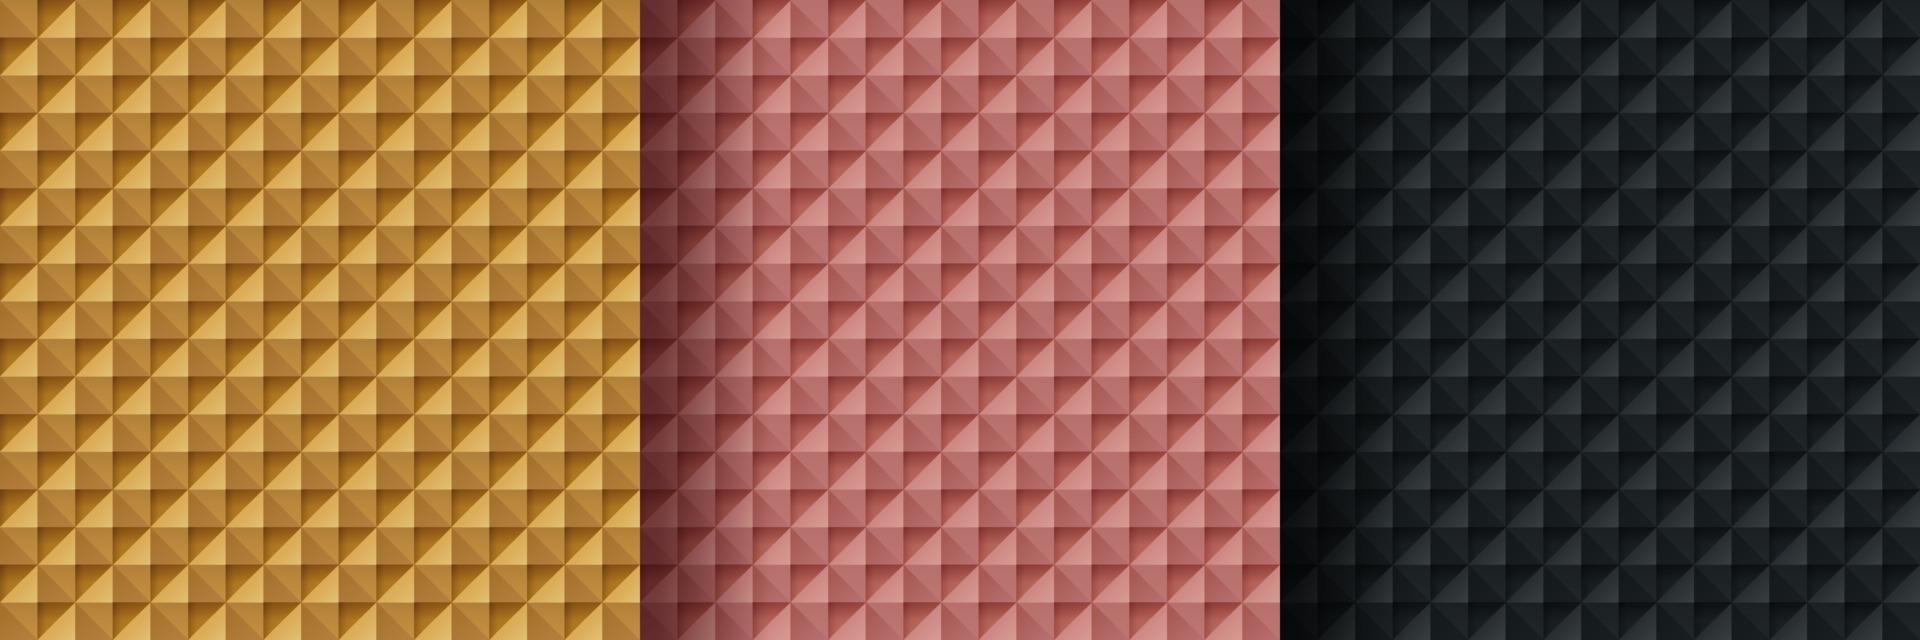 uppsättning av gyllene, rosa guld och svart abstrakt geometrisk form mönster, lyx 3d trianglar mönster bakgrund. kan användas för omslag, konstverk, tryckt annons, affisch, webbbanner. enkel och minimal. vektor eps10.